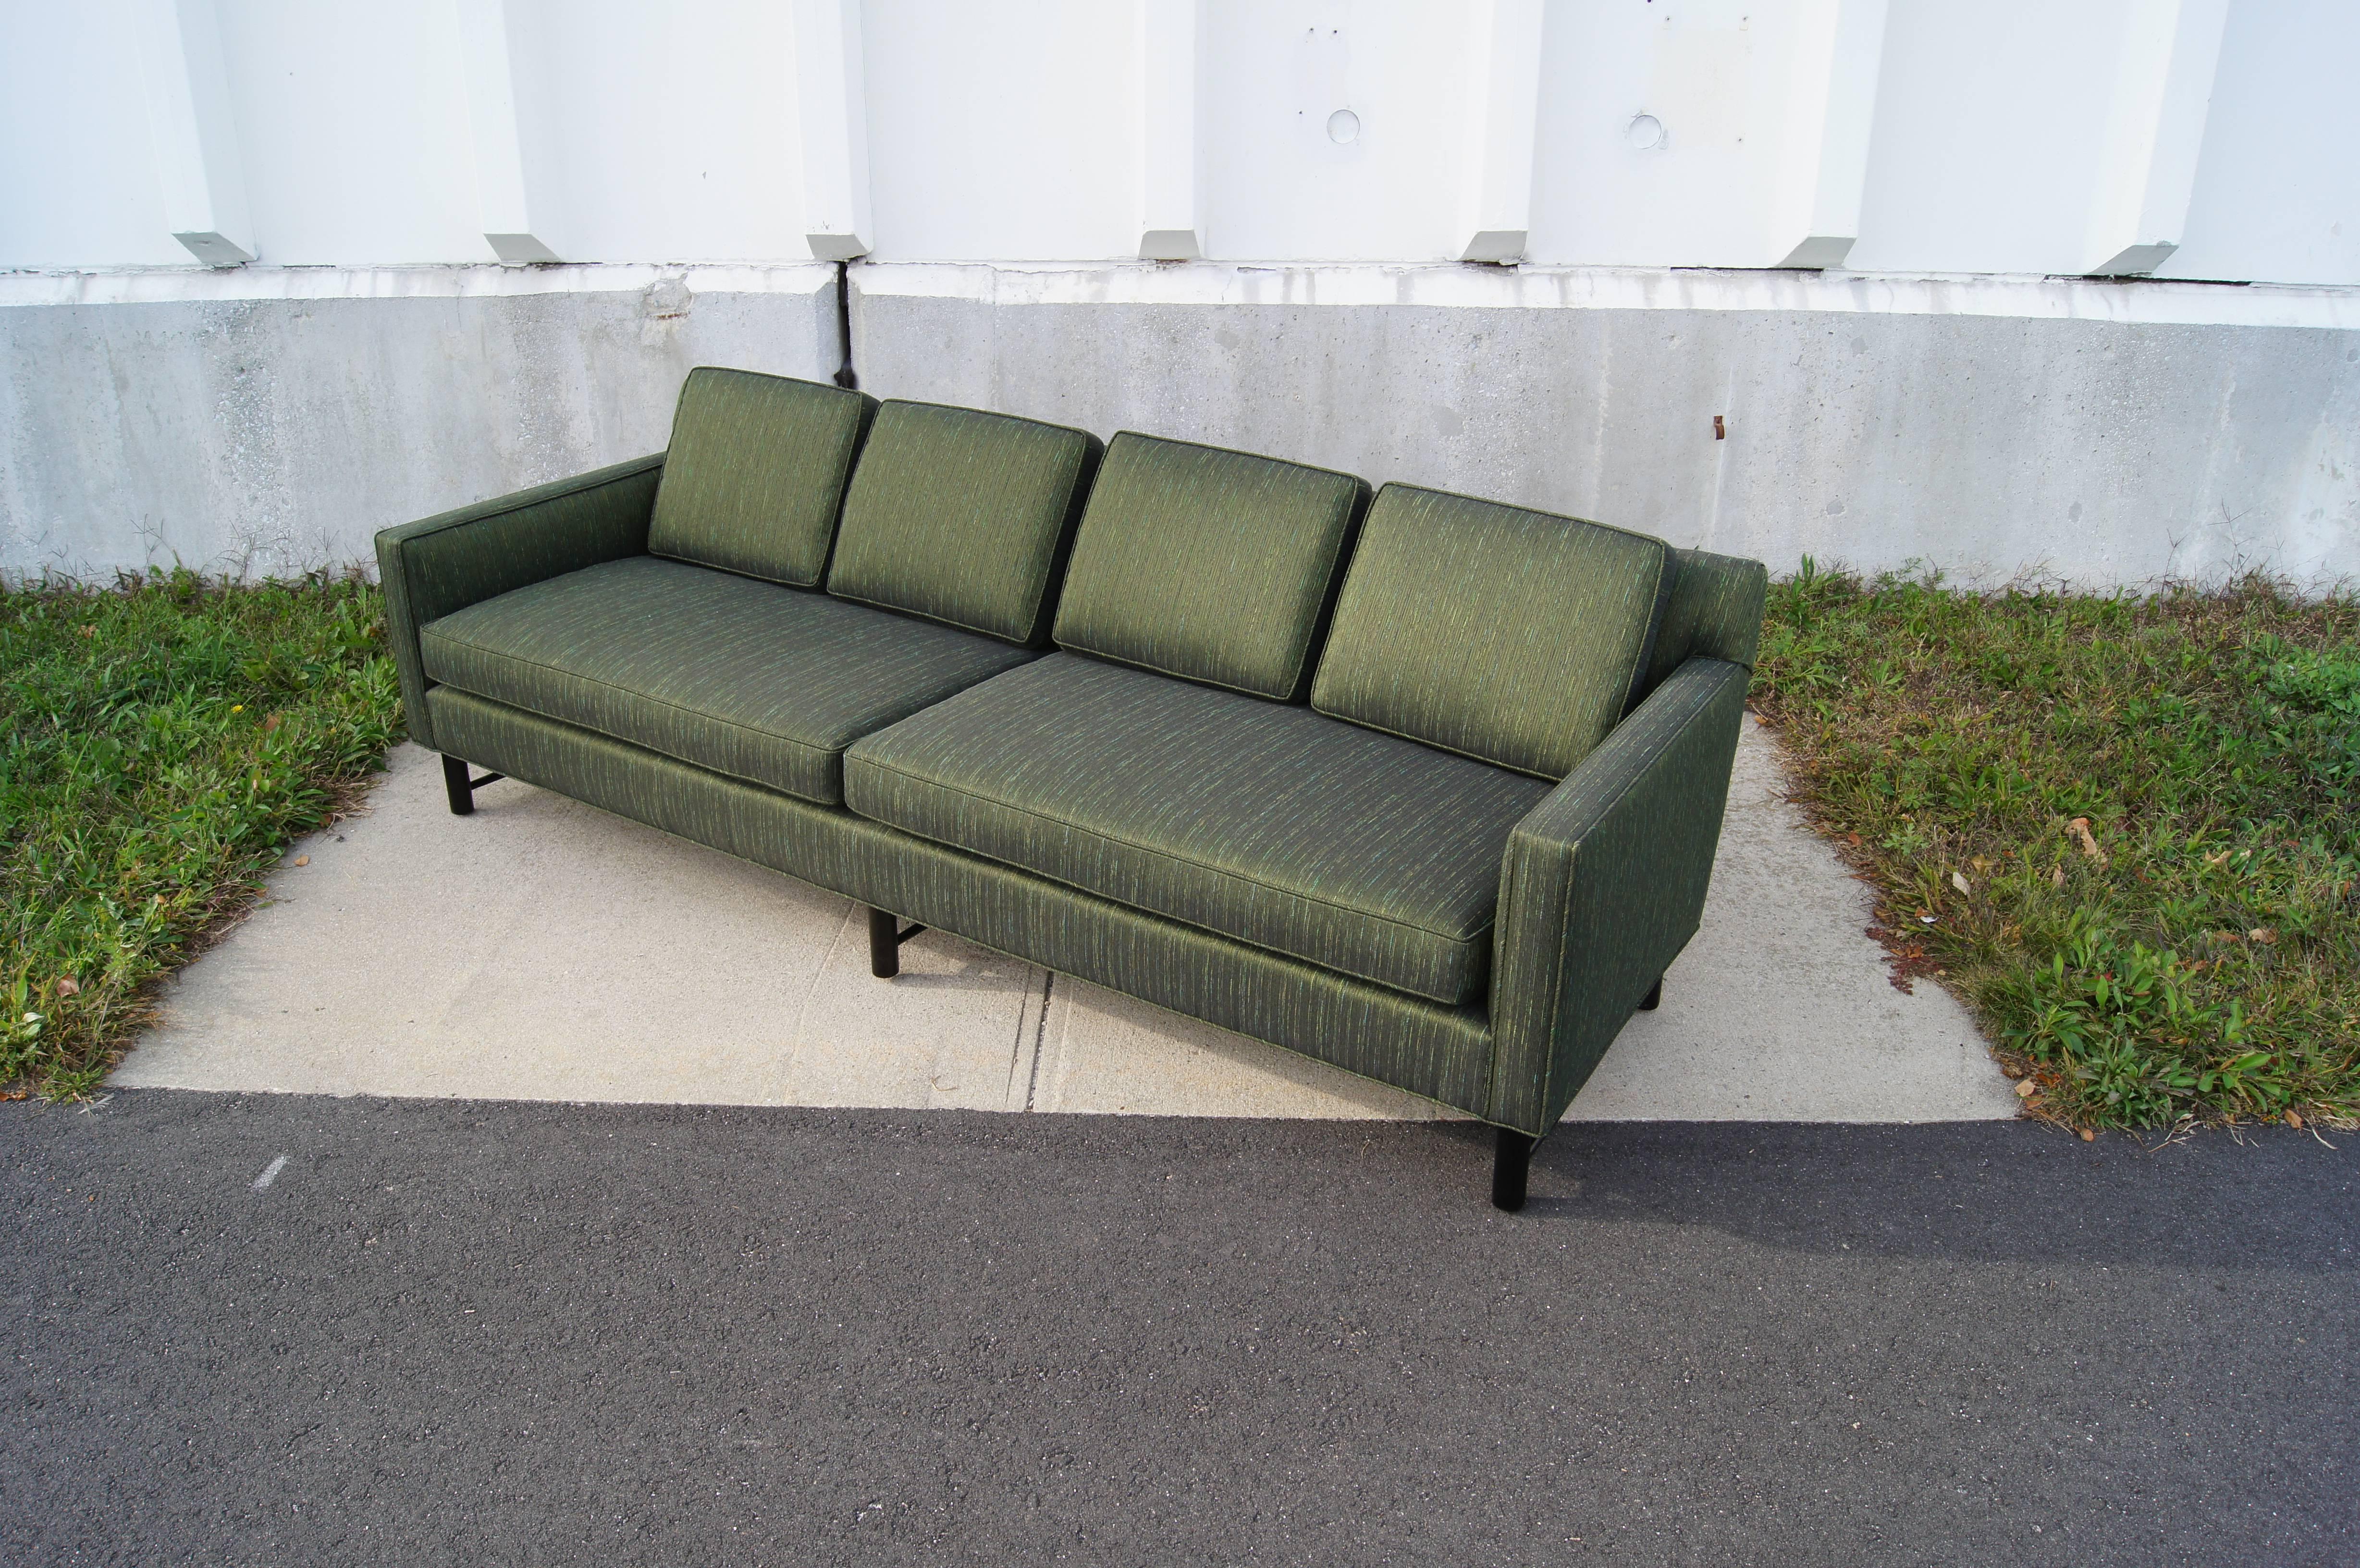 American Model 5138 Sofa by Edward Wormley for Dunbar